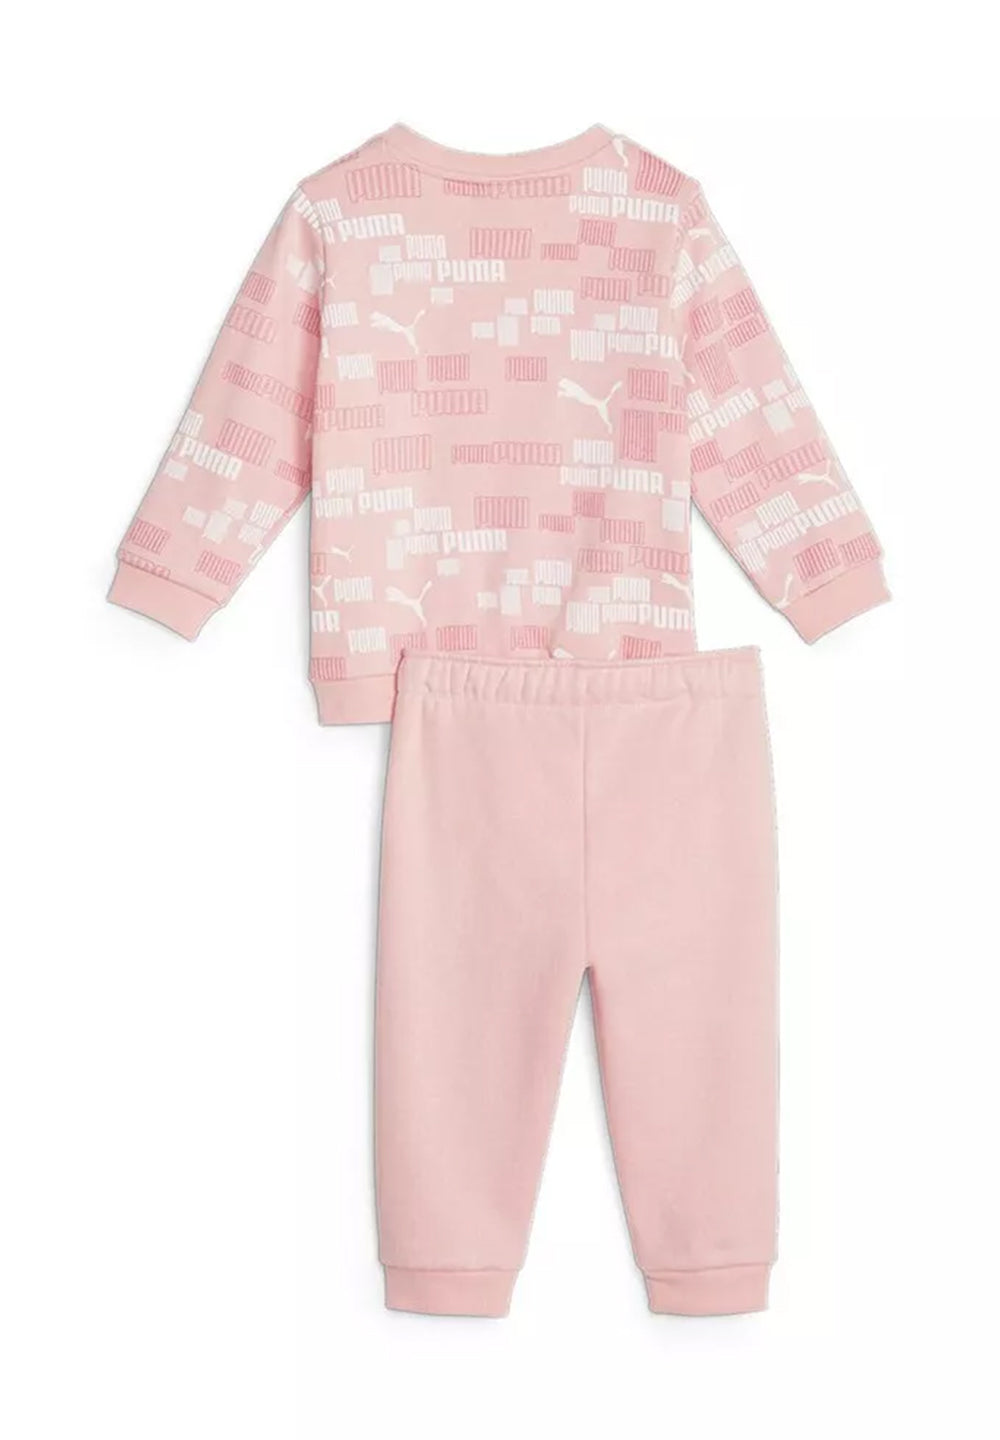 Completo felpa rosa per neonata